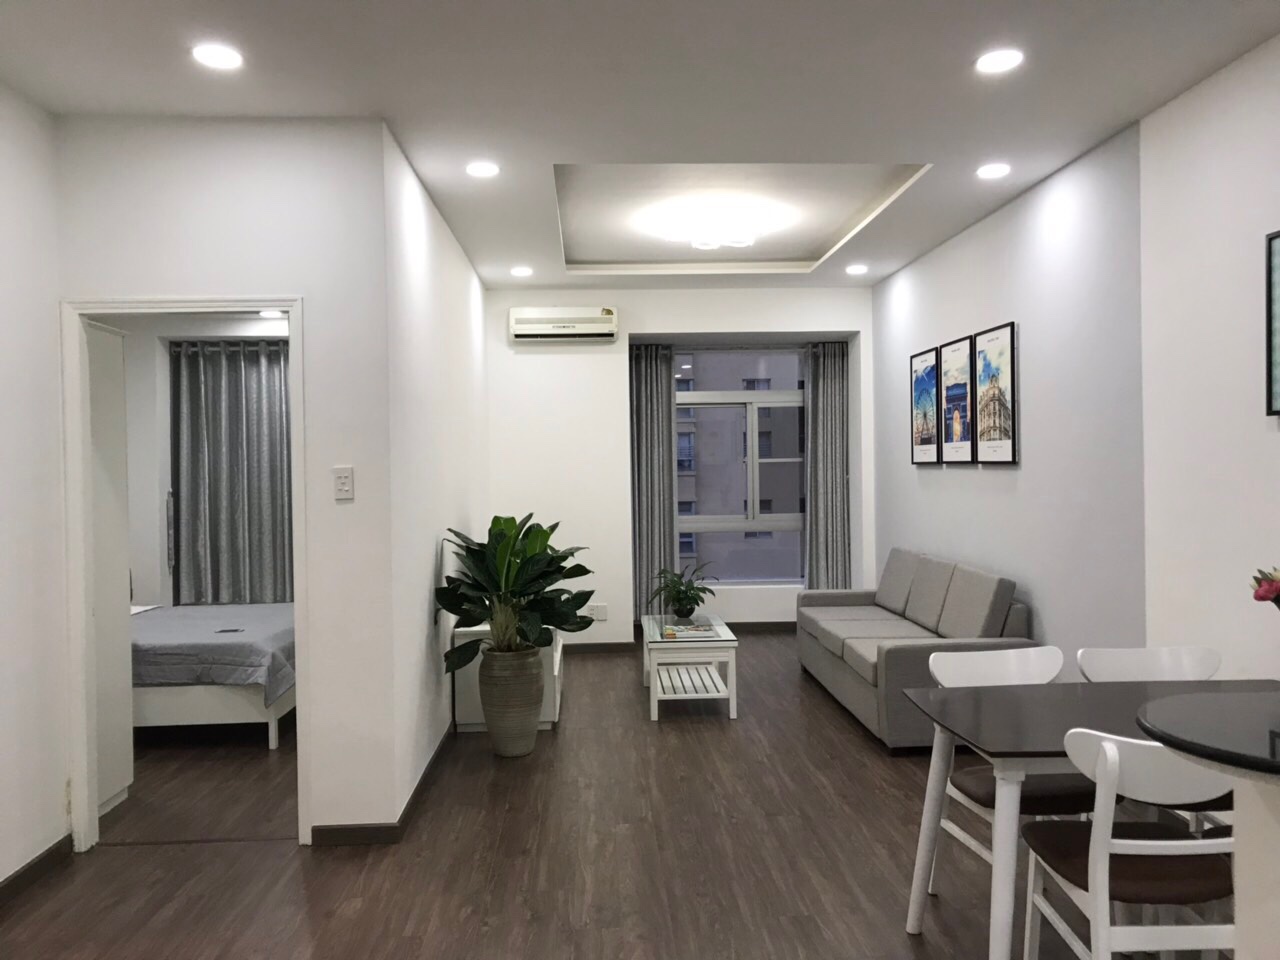 Cần cho thuê căn hộ Scenic Valley 2 Phú Mỹ Hưng, giá thuê: 21 triệu/tháng nhà mới đẹp lung linh LH: 0915213434 PHONG.